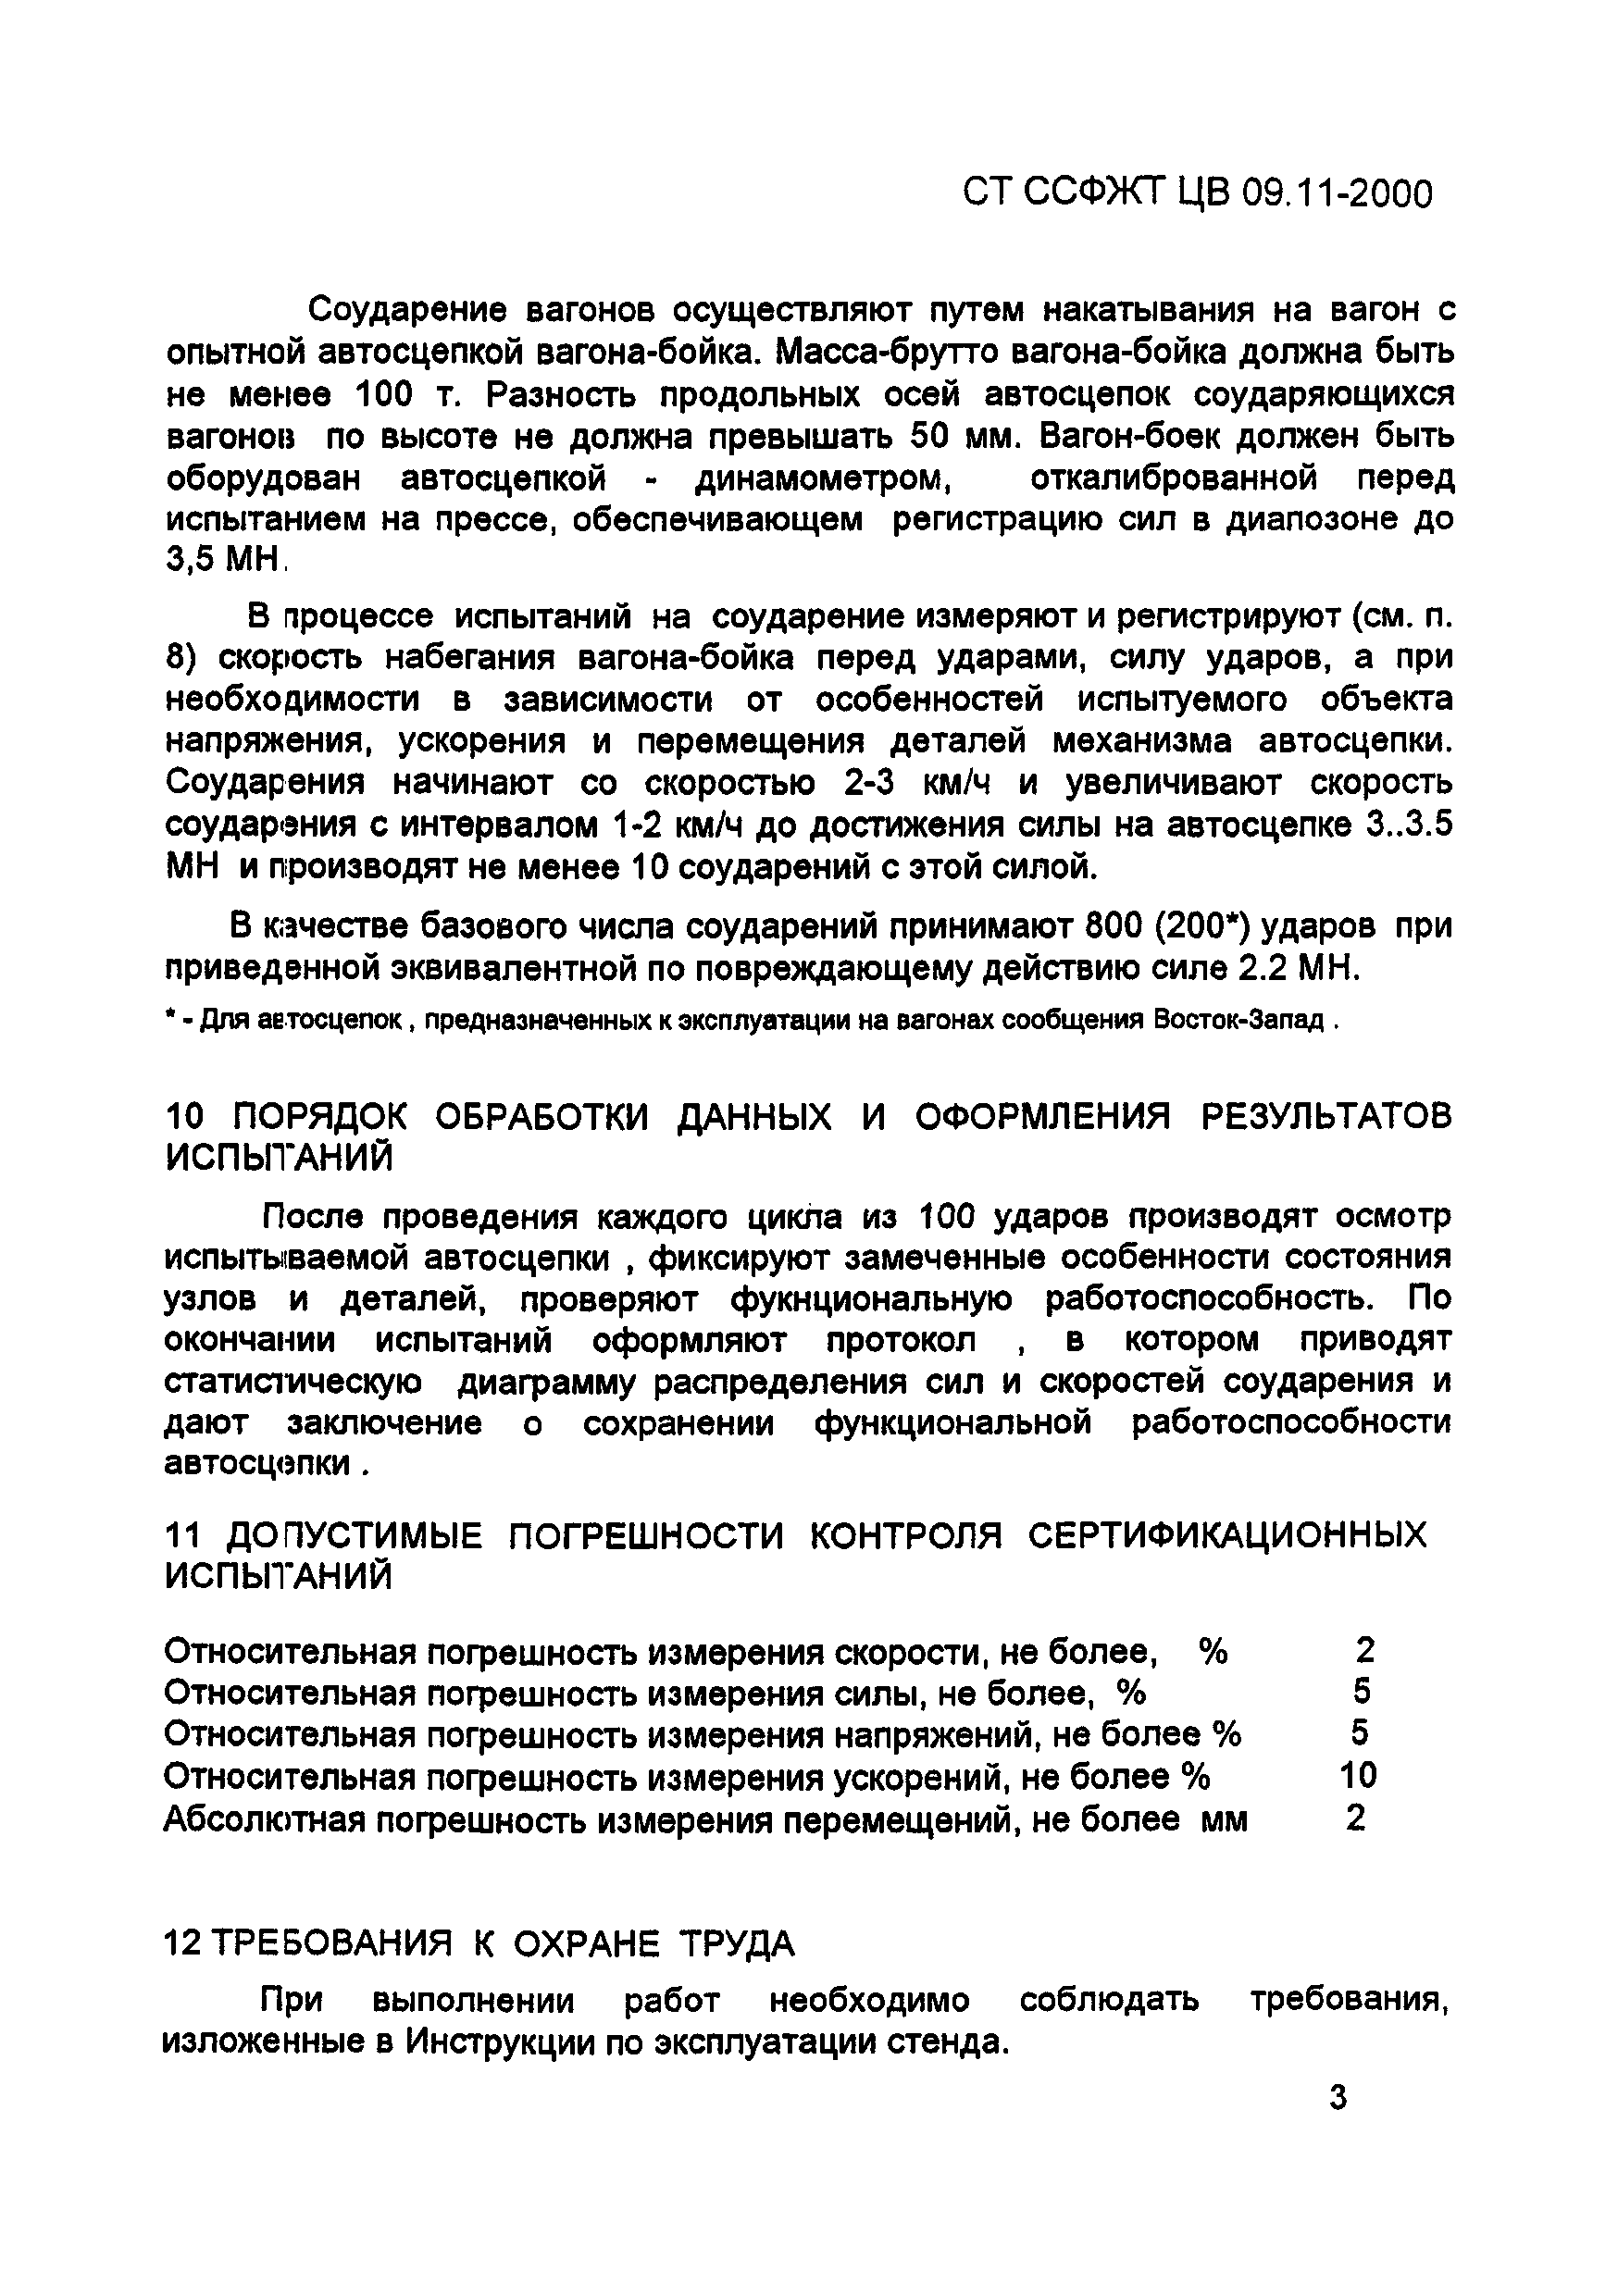 СТ ССФЖТ ЦВ 09.11-2000